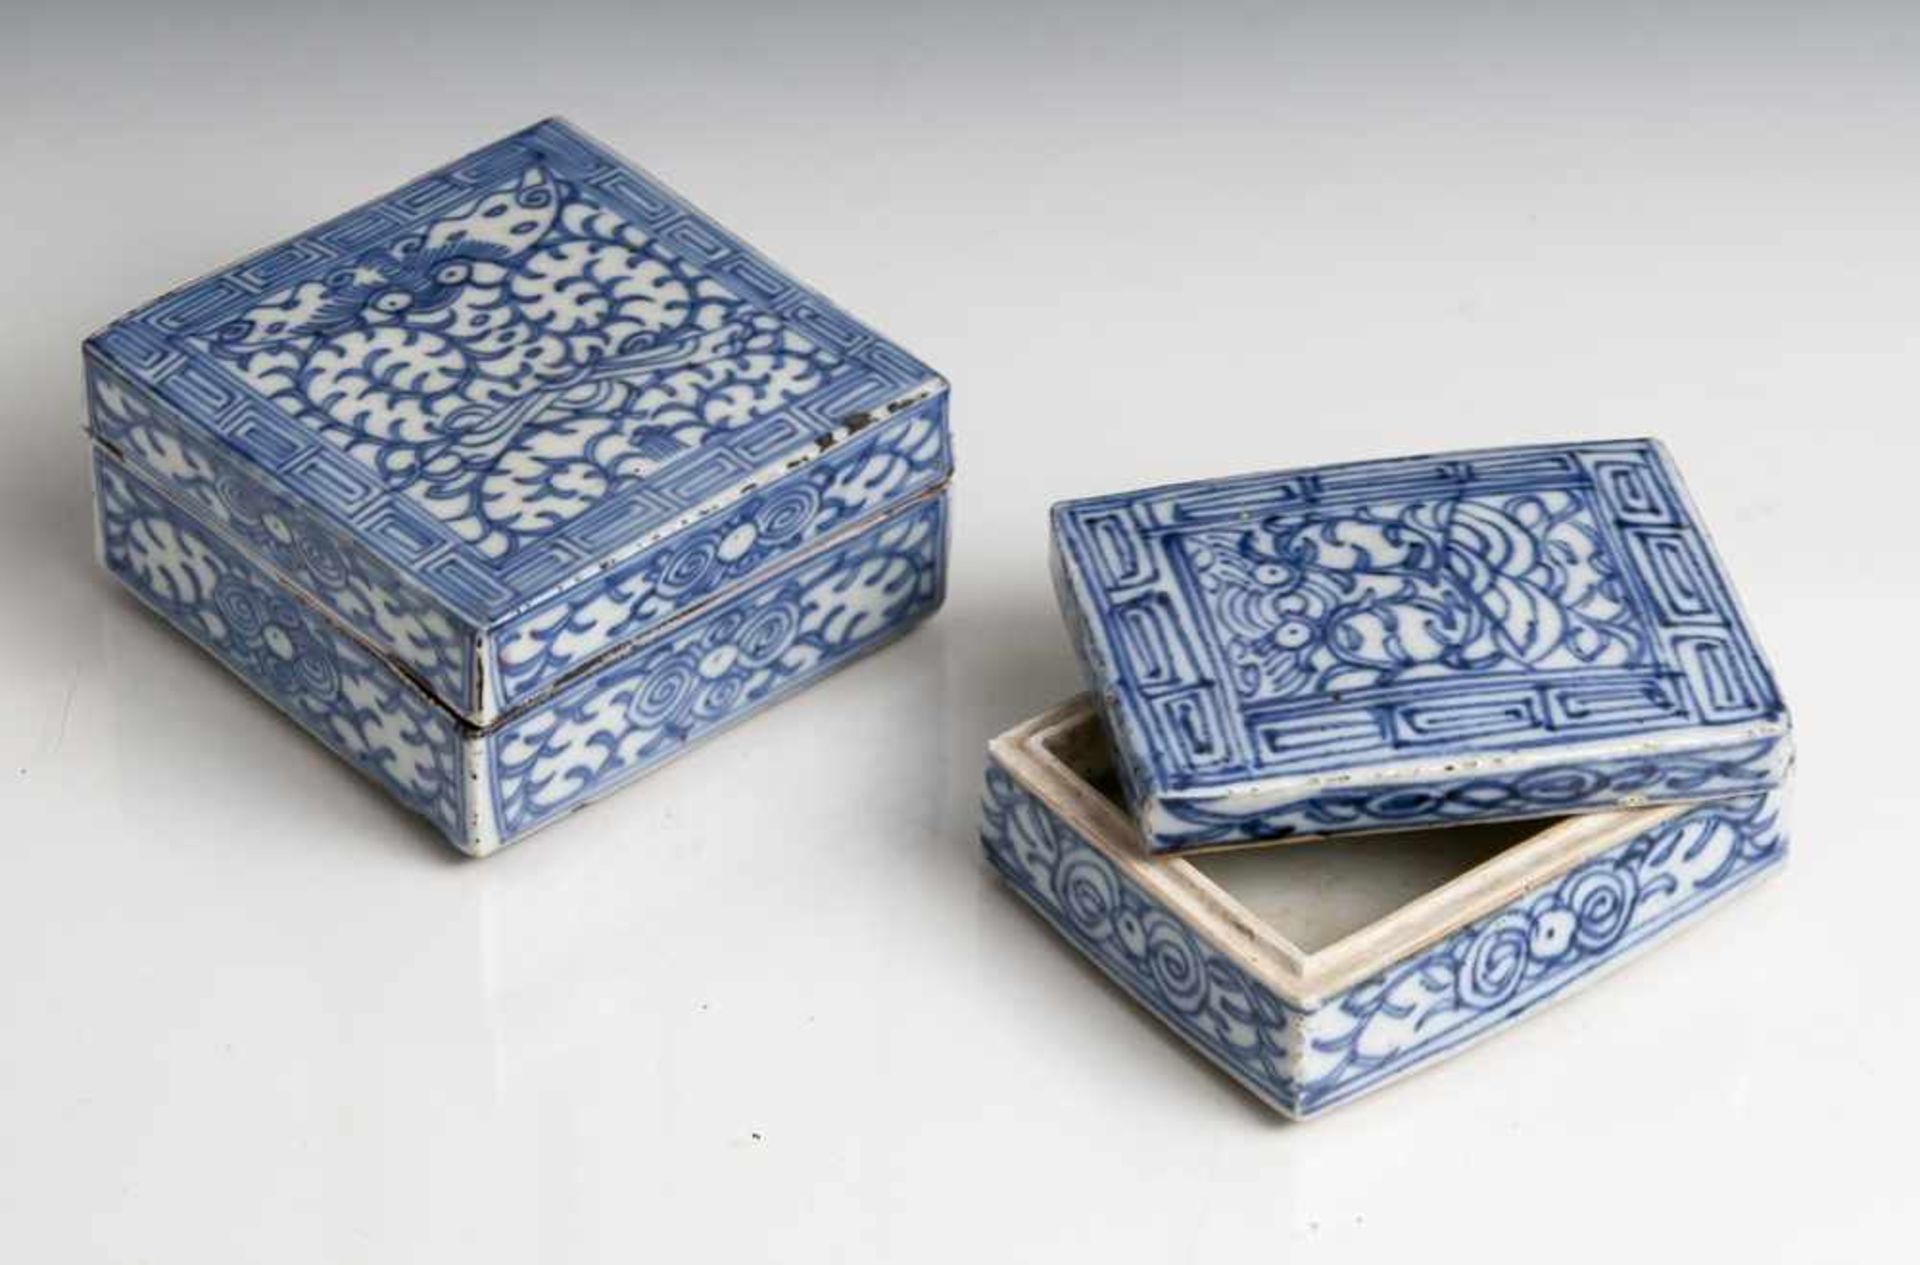 2 Deckeldosen, Siegellackdosen, China, 19./20. Jahrhundert, Blau-Weiß-Porzellan, Rechtecksform,